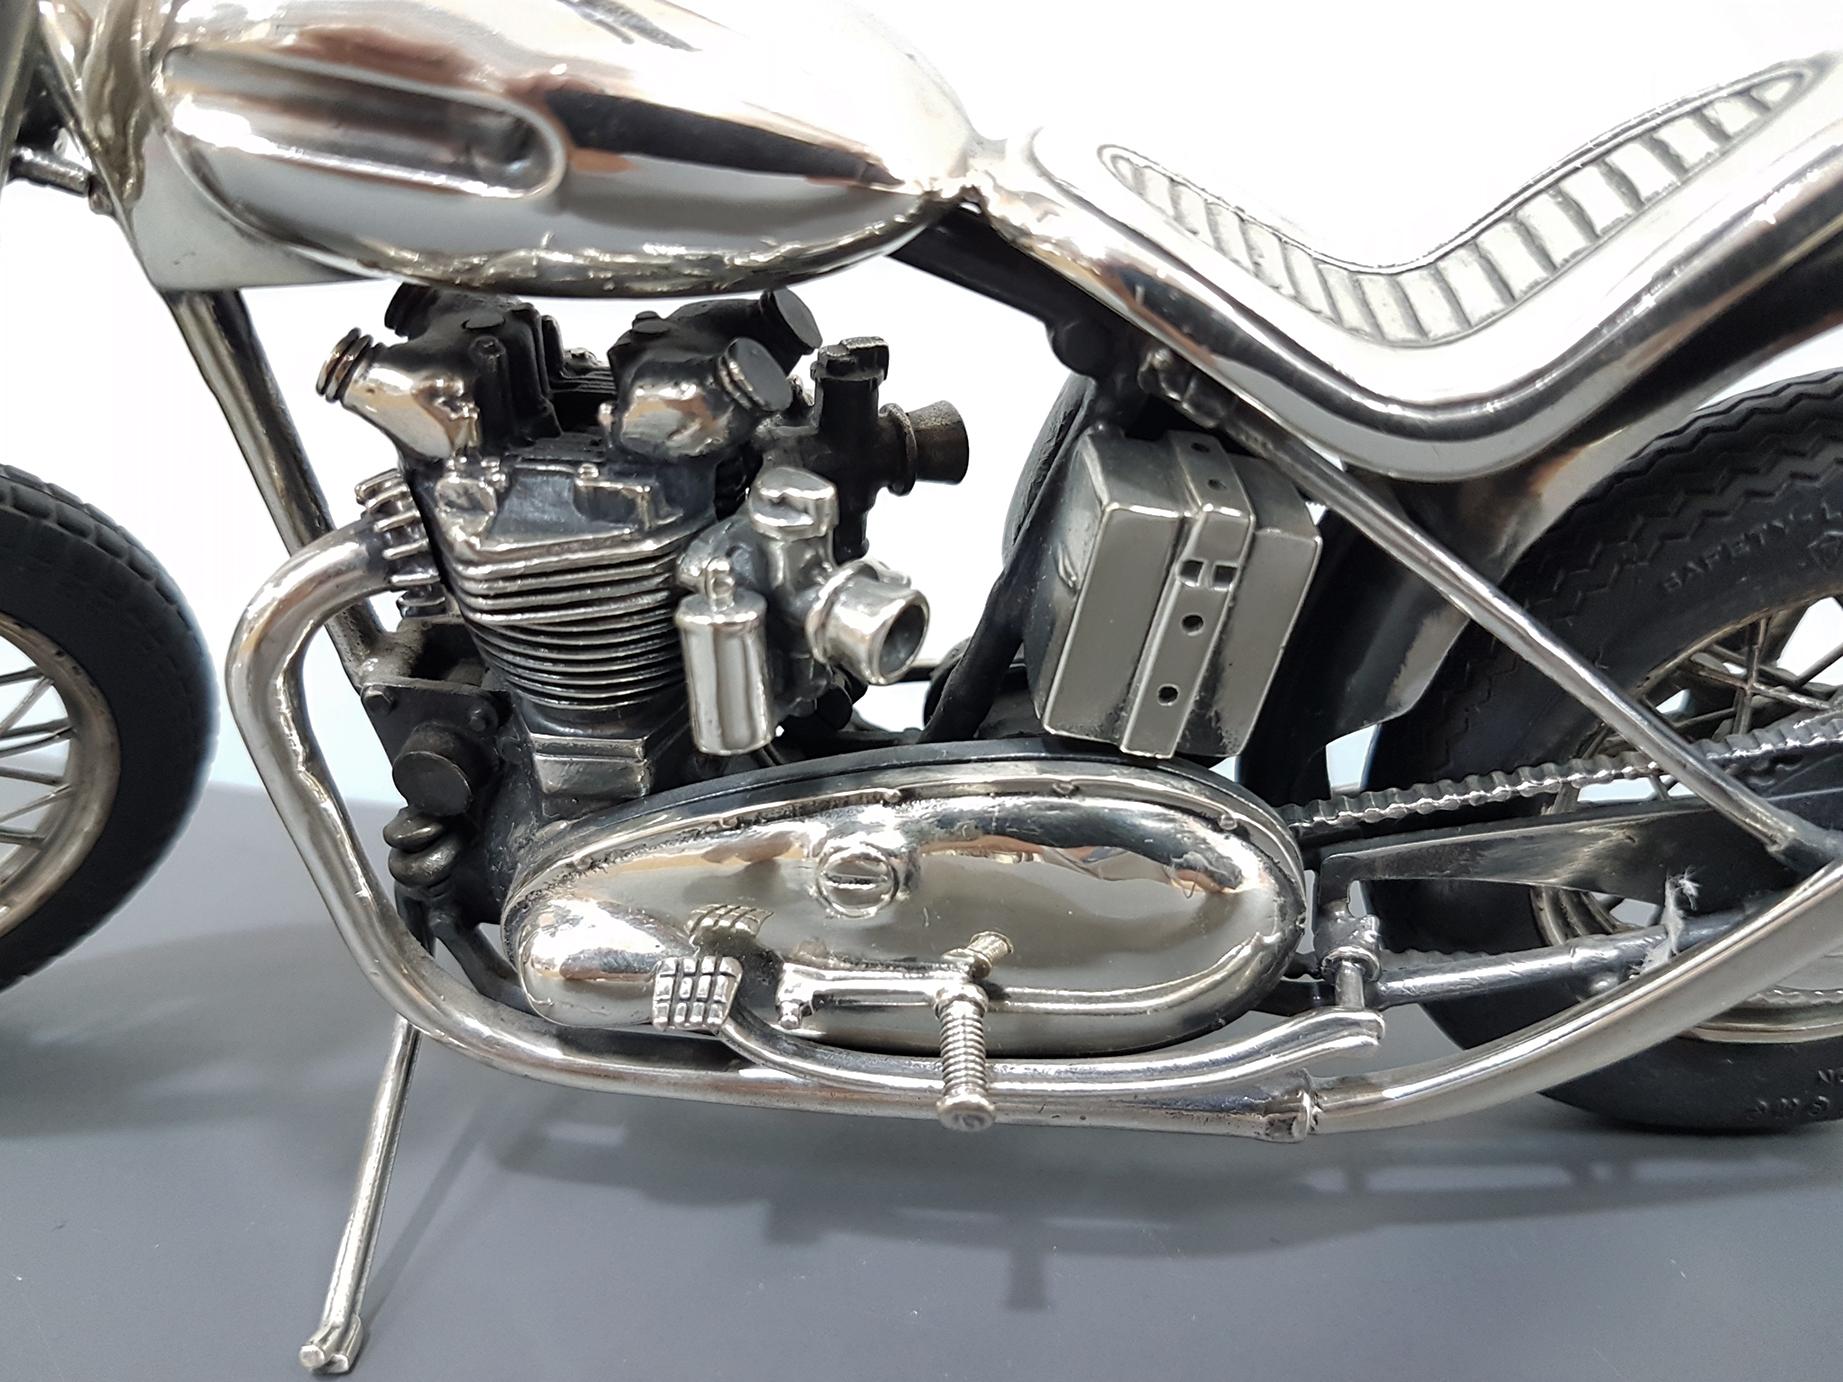 Vintage Triumph Custom Motorrad in Sterling Silber mit sehr detailgetreuer Wiedergabe.
Die Räder sind mit Speichen und Gummireifen
Vollständig handgefertigt und in Italien hergestellt

 757Gramm.